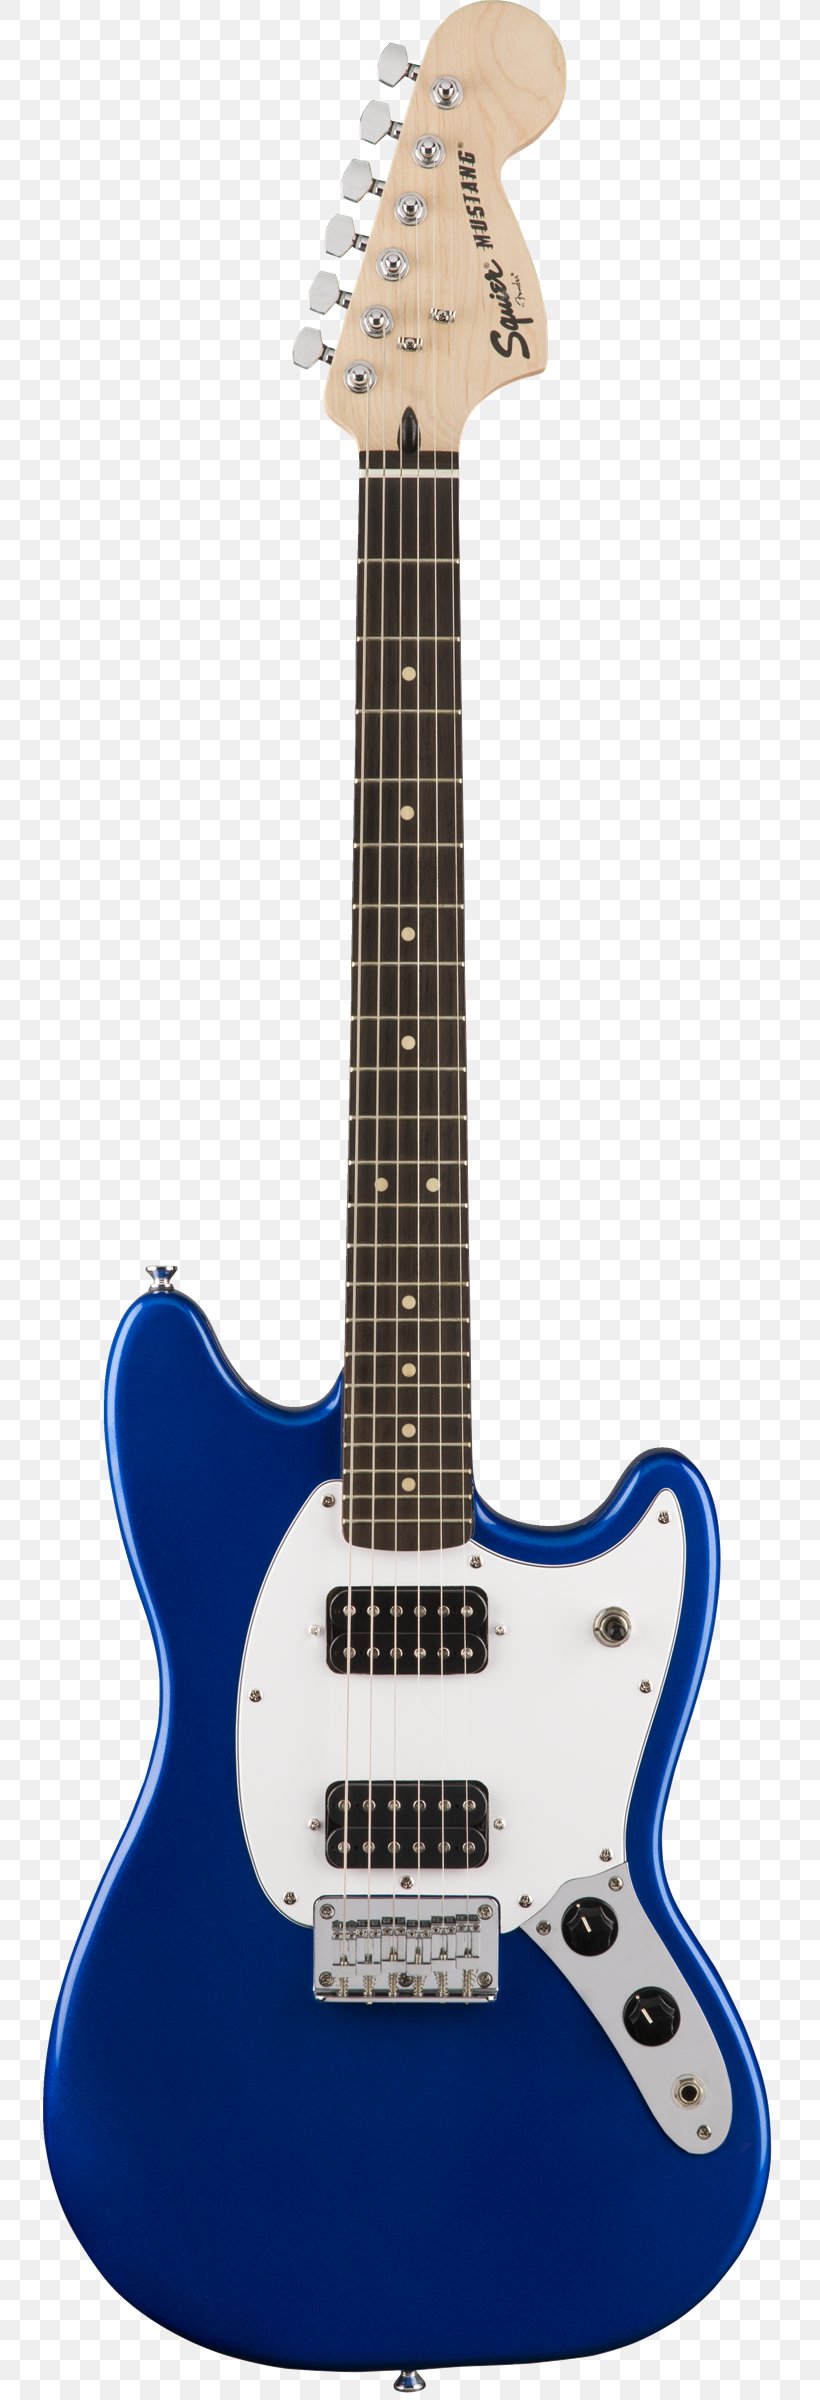 Fender Bullet Fender Mustang Fender Stratocaster Squier Guitar, PNG, 736x2400px, Fender Bullet, Acoustic Electric Guitar, Acoustic Guitar, Bass Guitar, Bridge Download Free